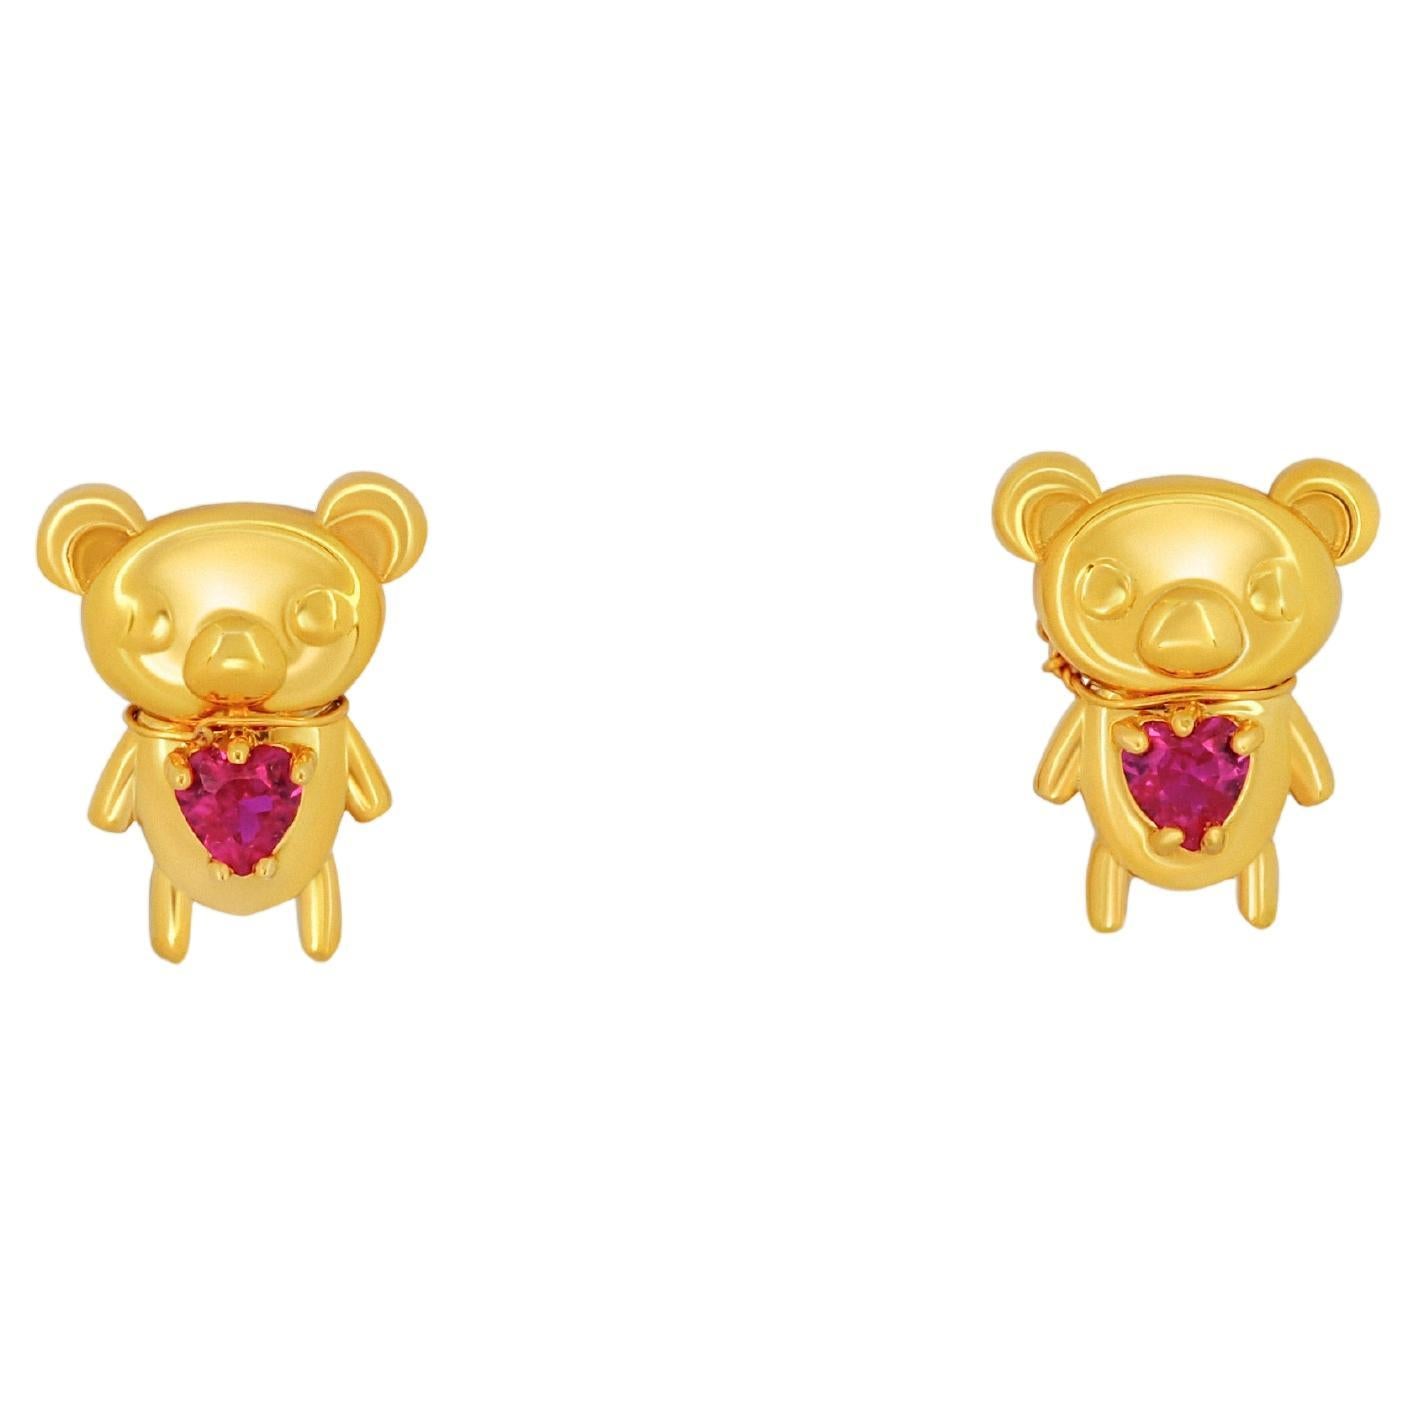 Teddy bear earrings studs in 14k gold. For Sale